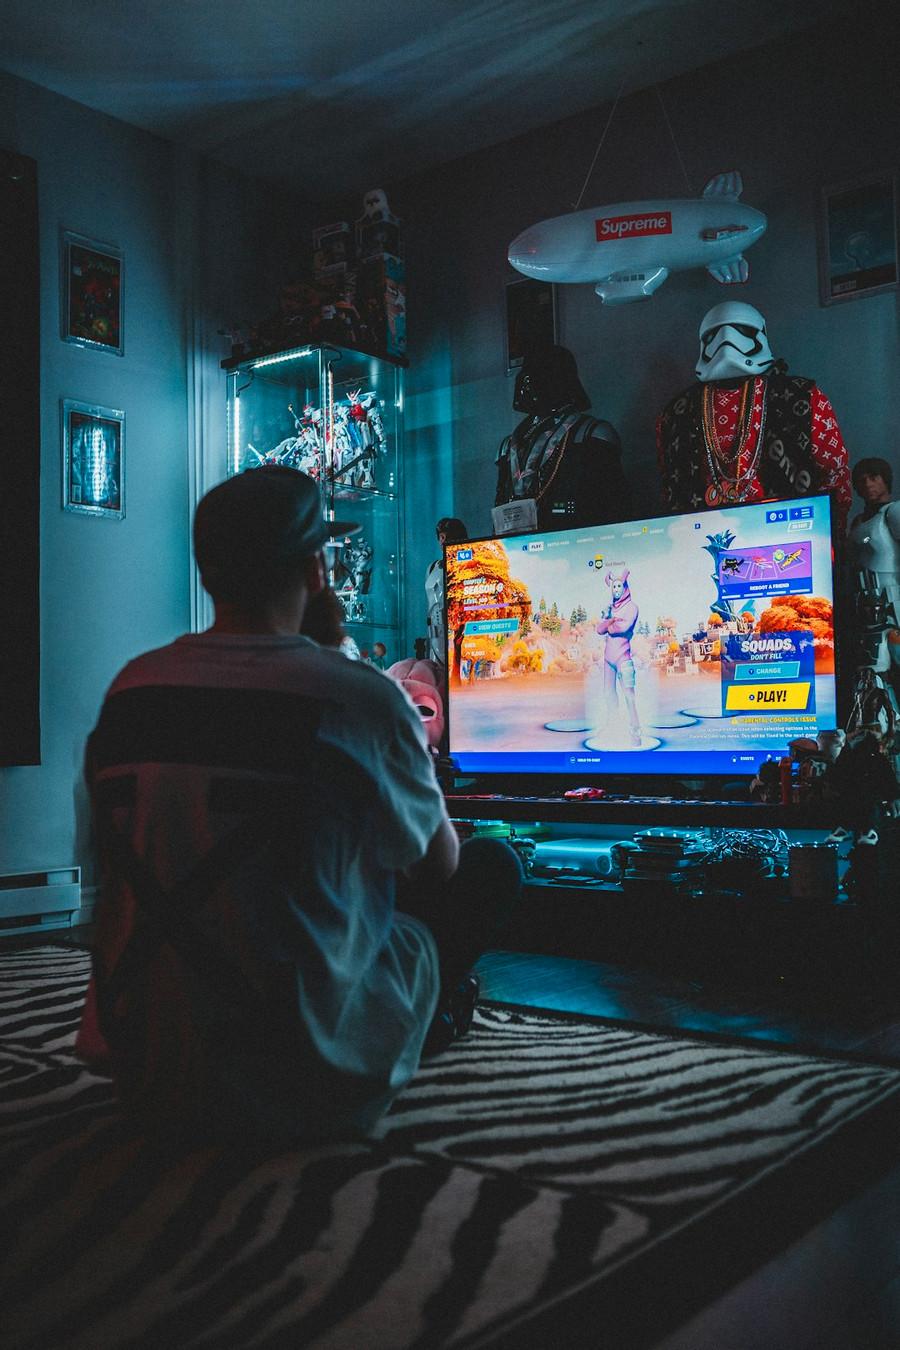 Gaming can improve social life